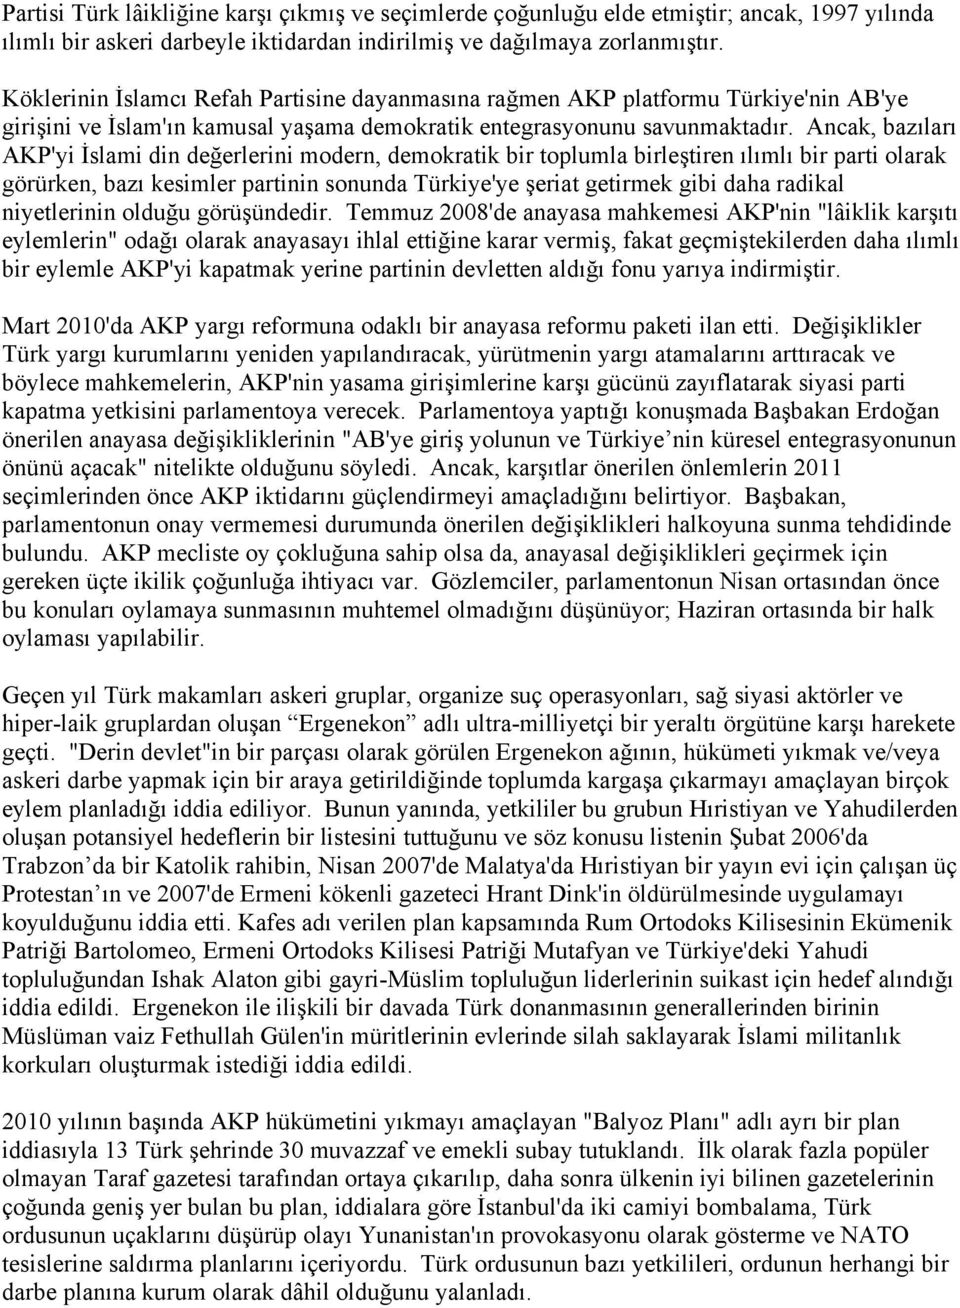 Ancak, bazıları AKP'yi İslami din değerlerini modern, demokratik bir toplumla birleştiren ılımlı bir parti olarak görürken, bazı kesimler partinin sonunda Türkiye'ye şeriat getirmek gibi daha radikal